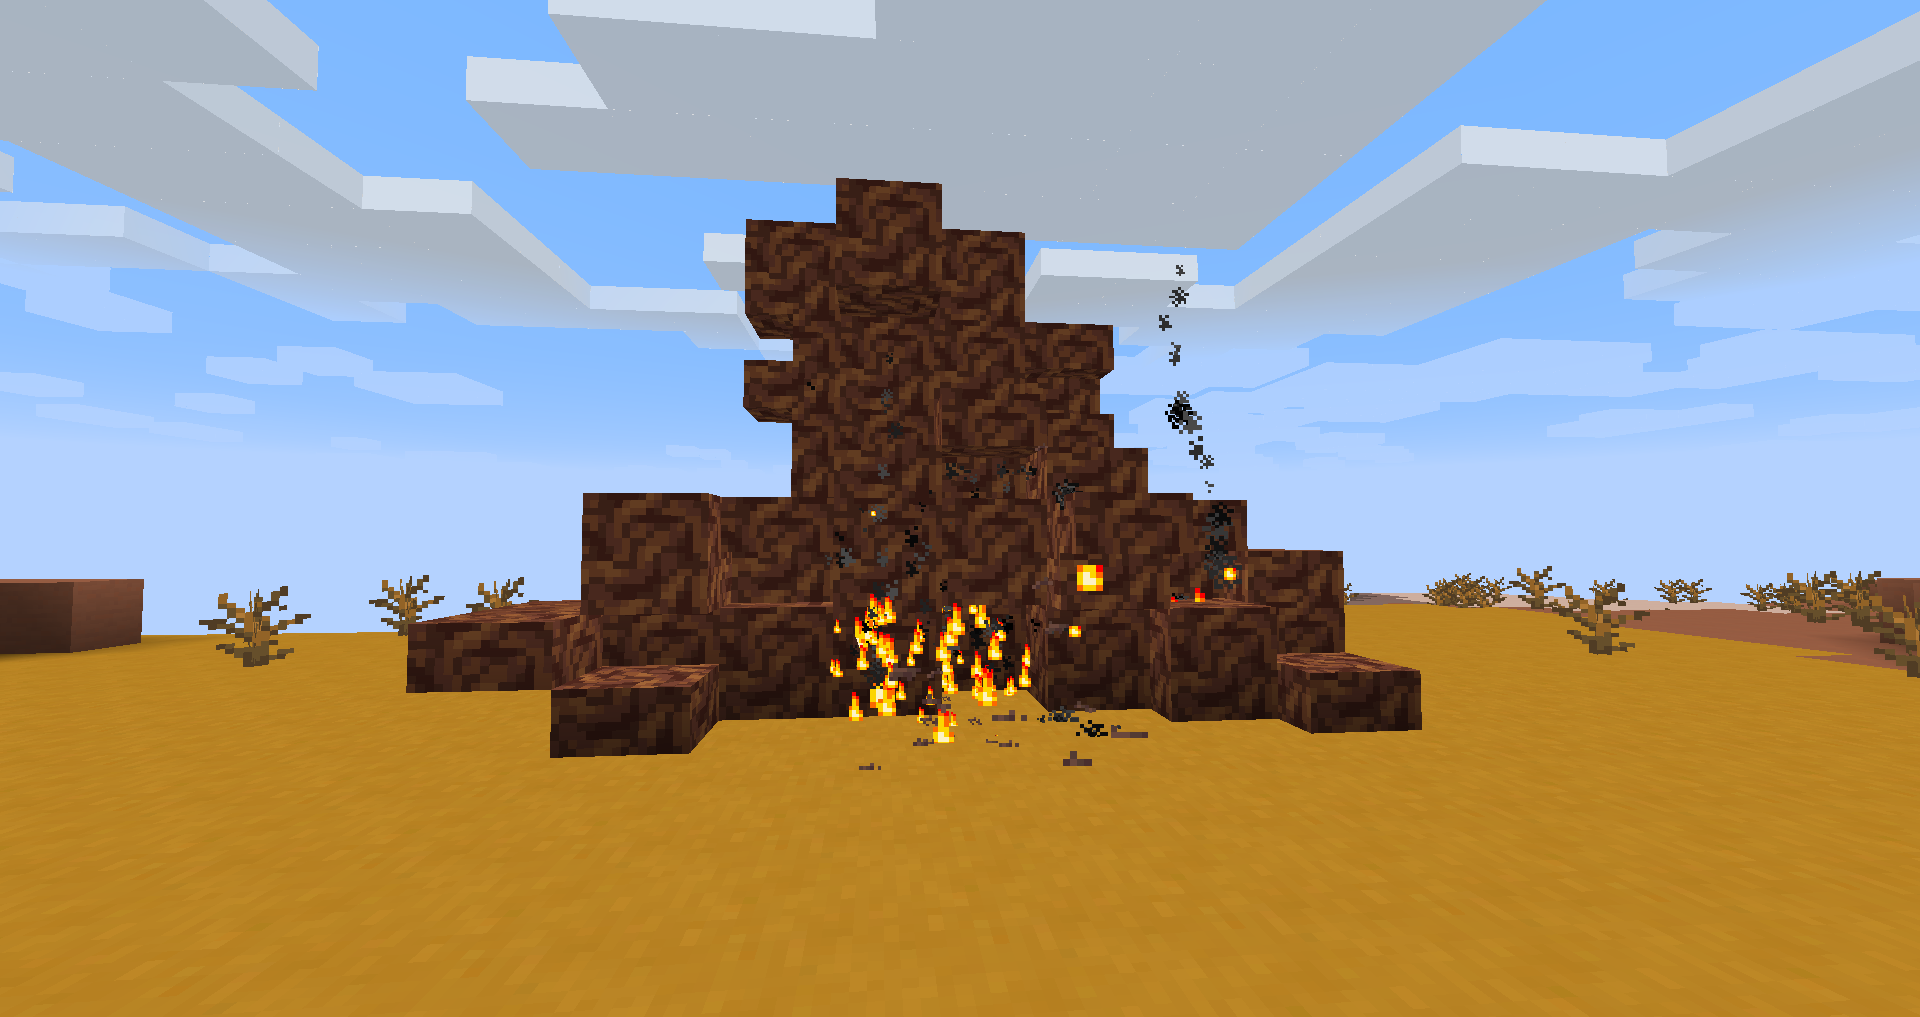 A mound of kindling starting to burn